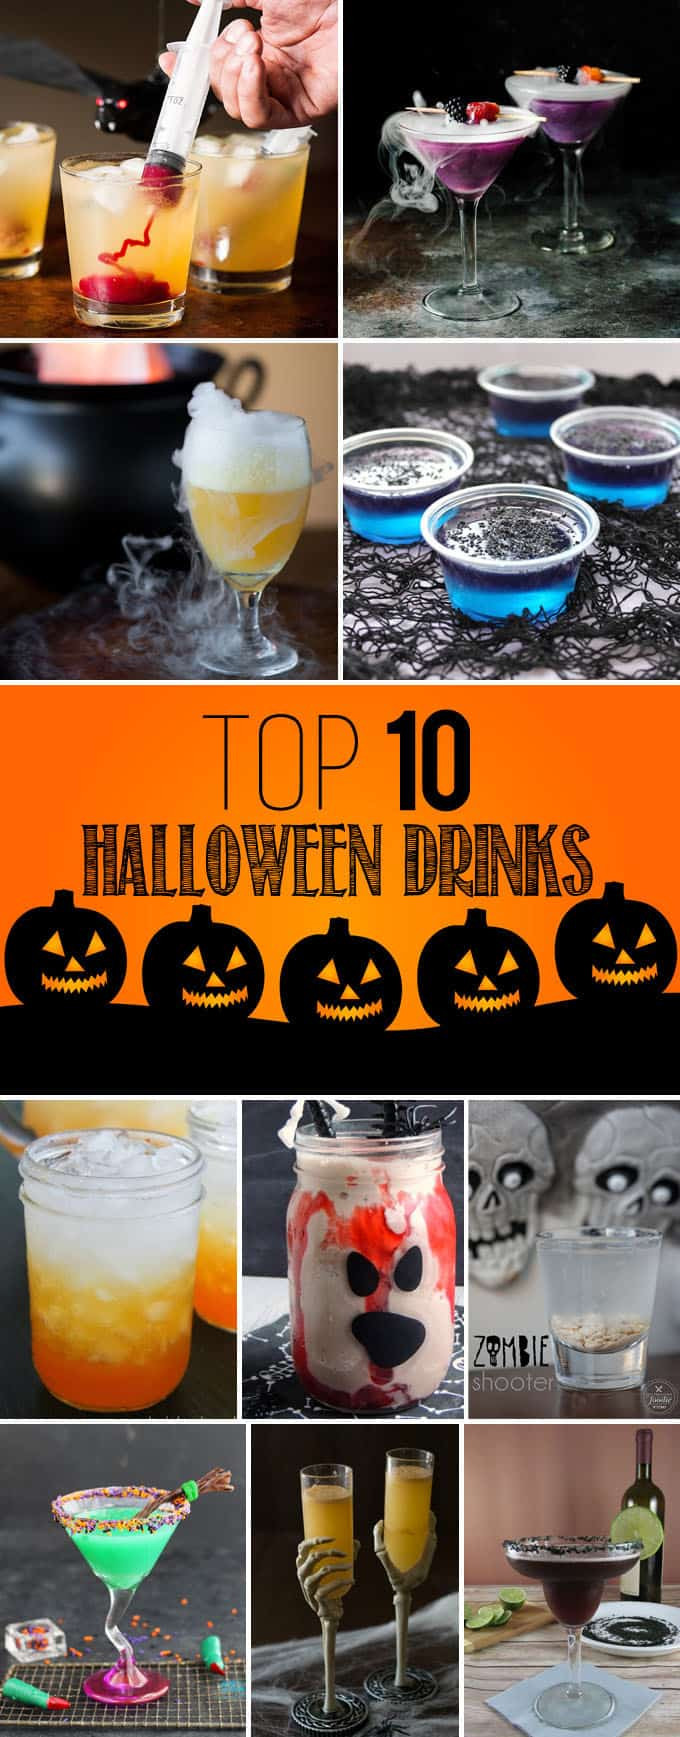 Halloween Adult Drinks
 Top 10 Halloween Drinks